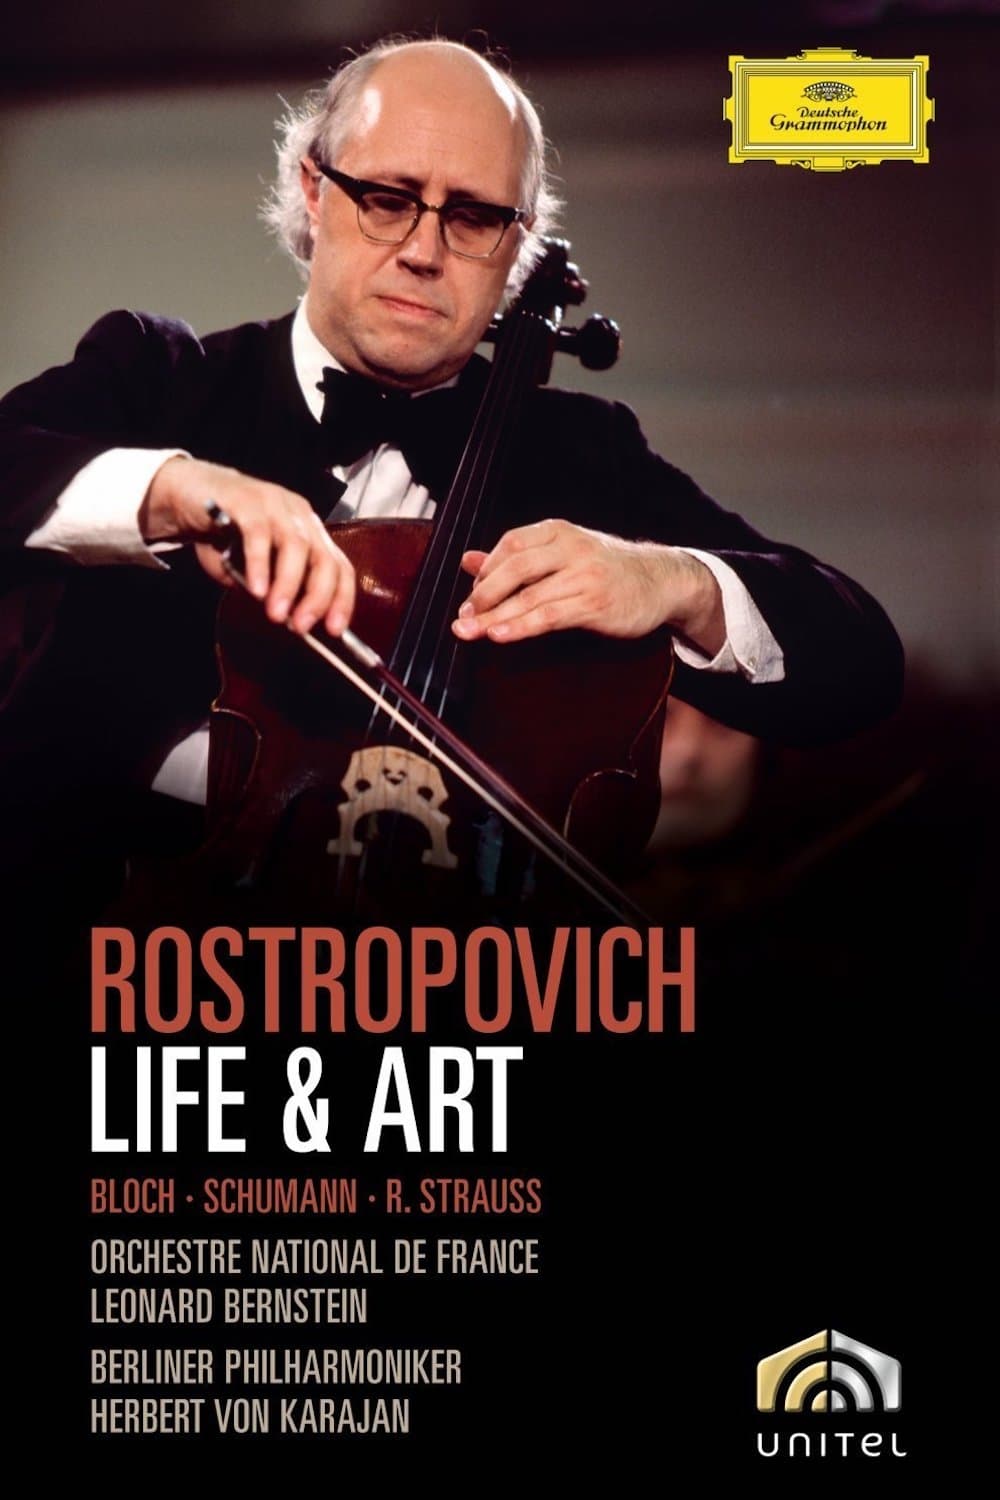 Rostropovich Life & Art